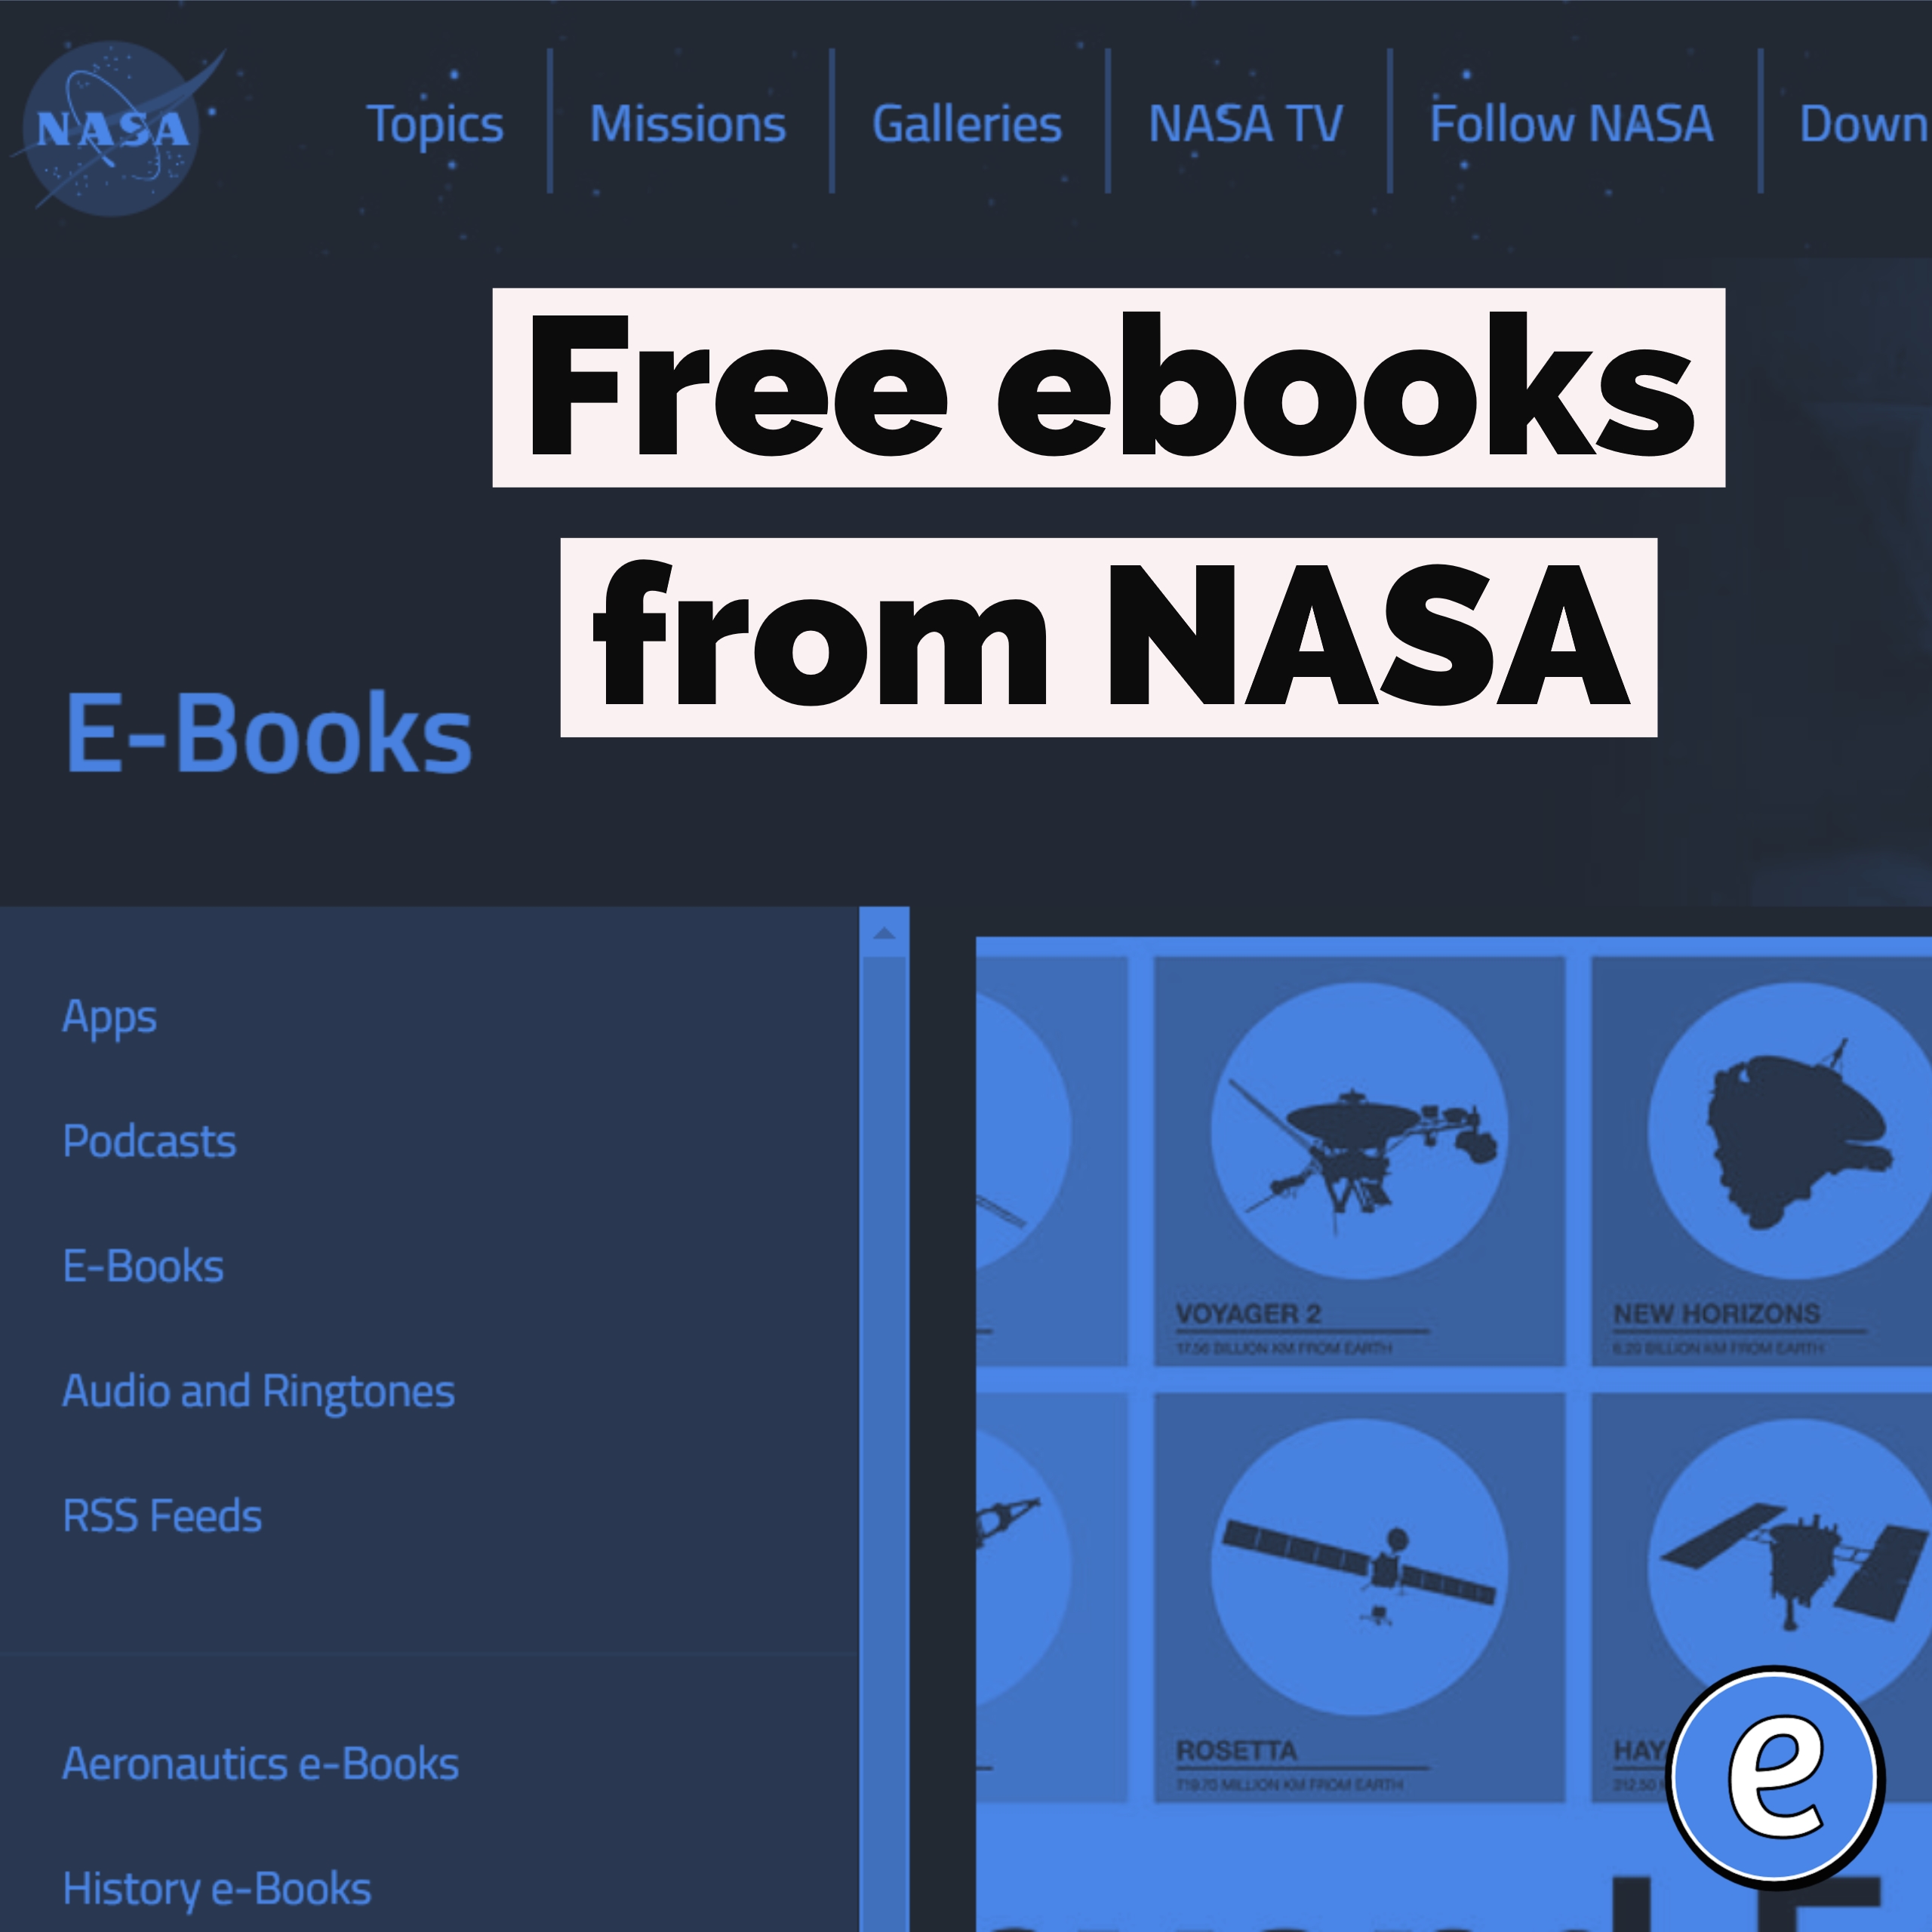 Free ebooks from NASA